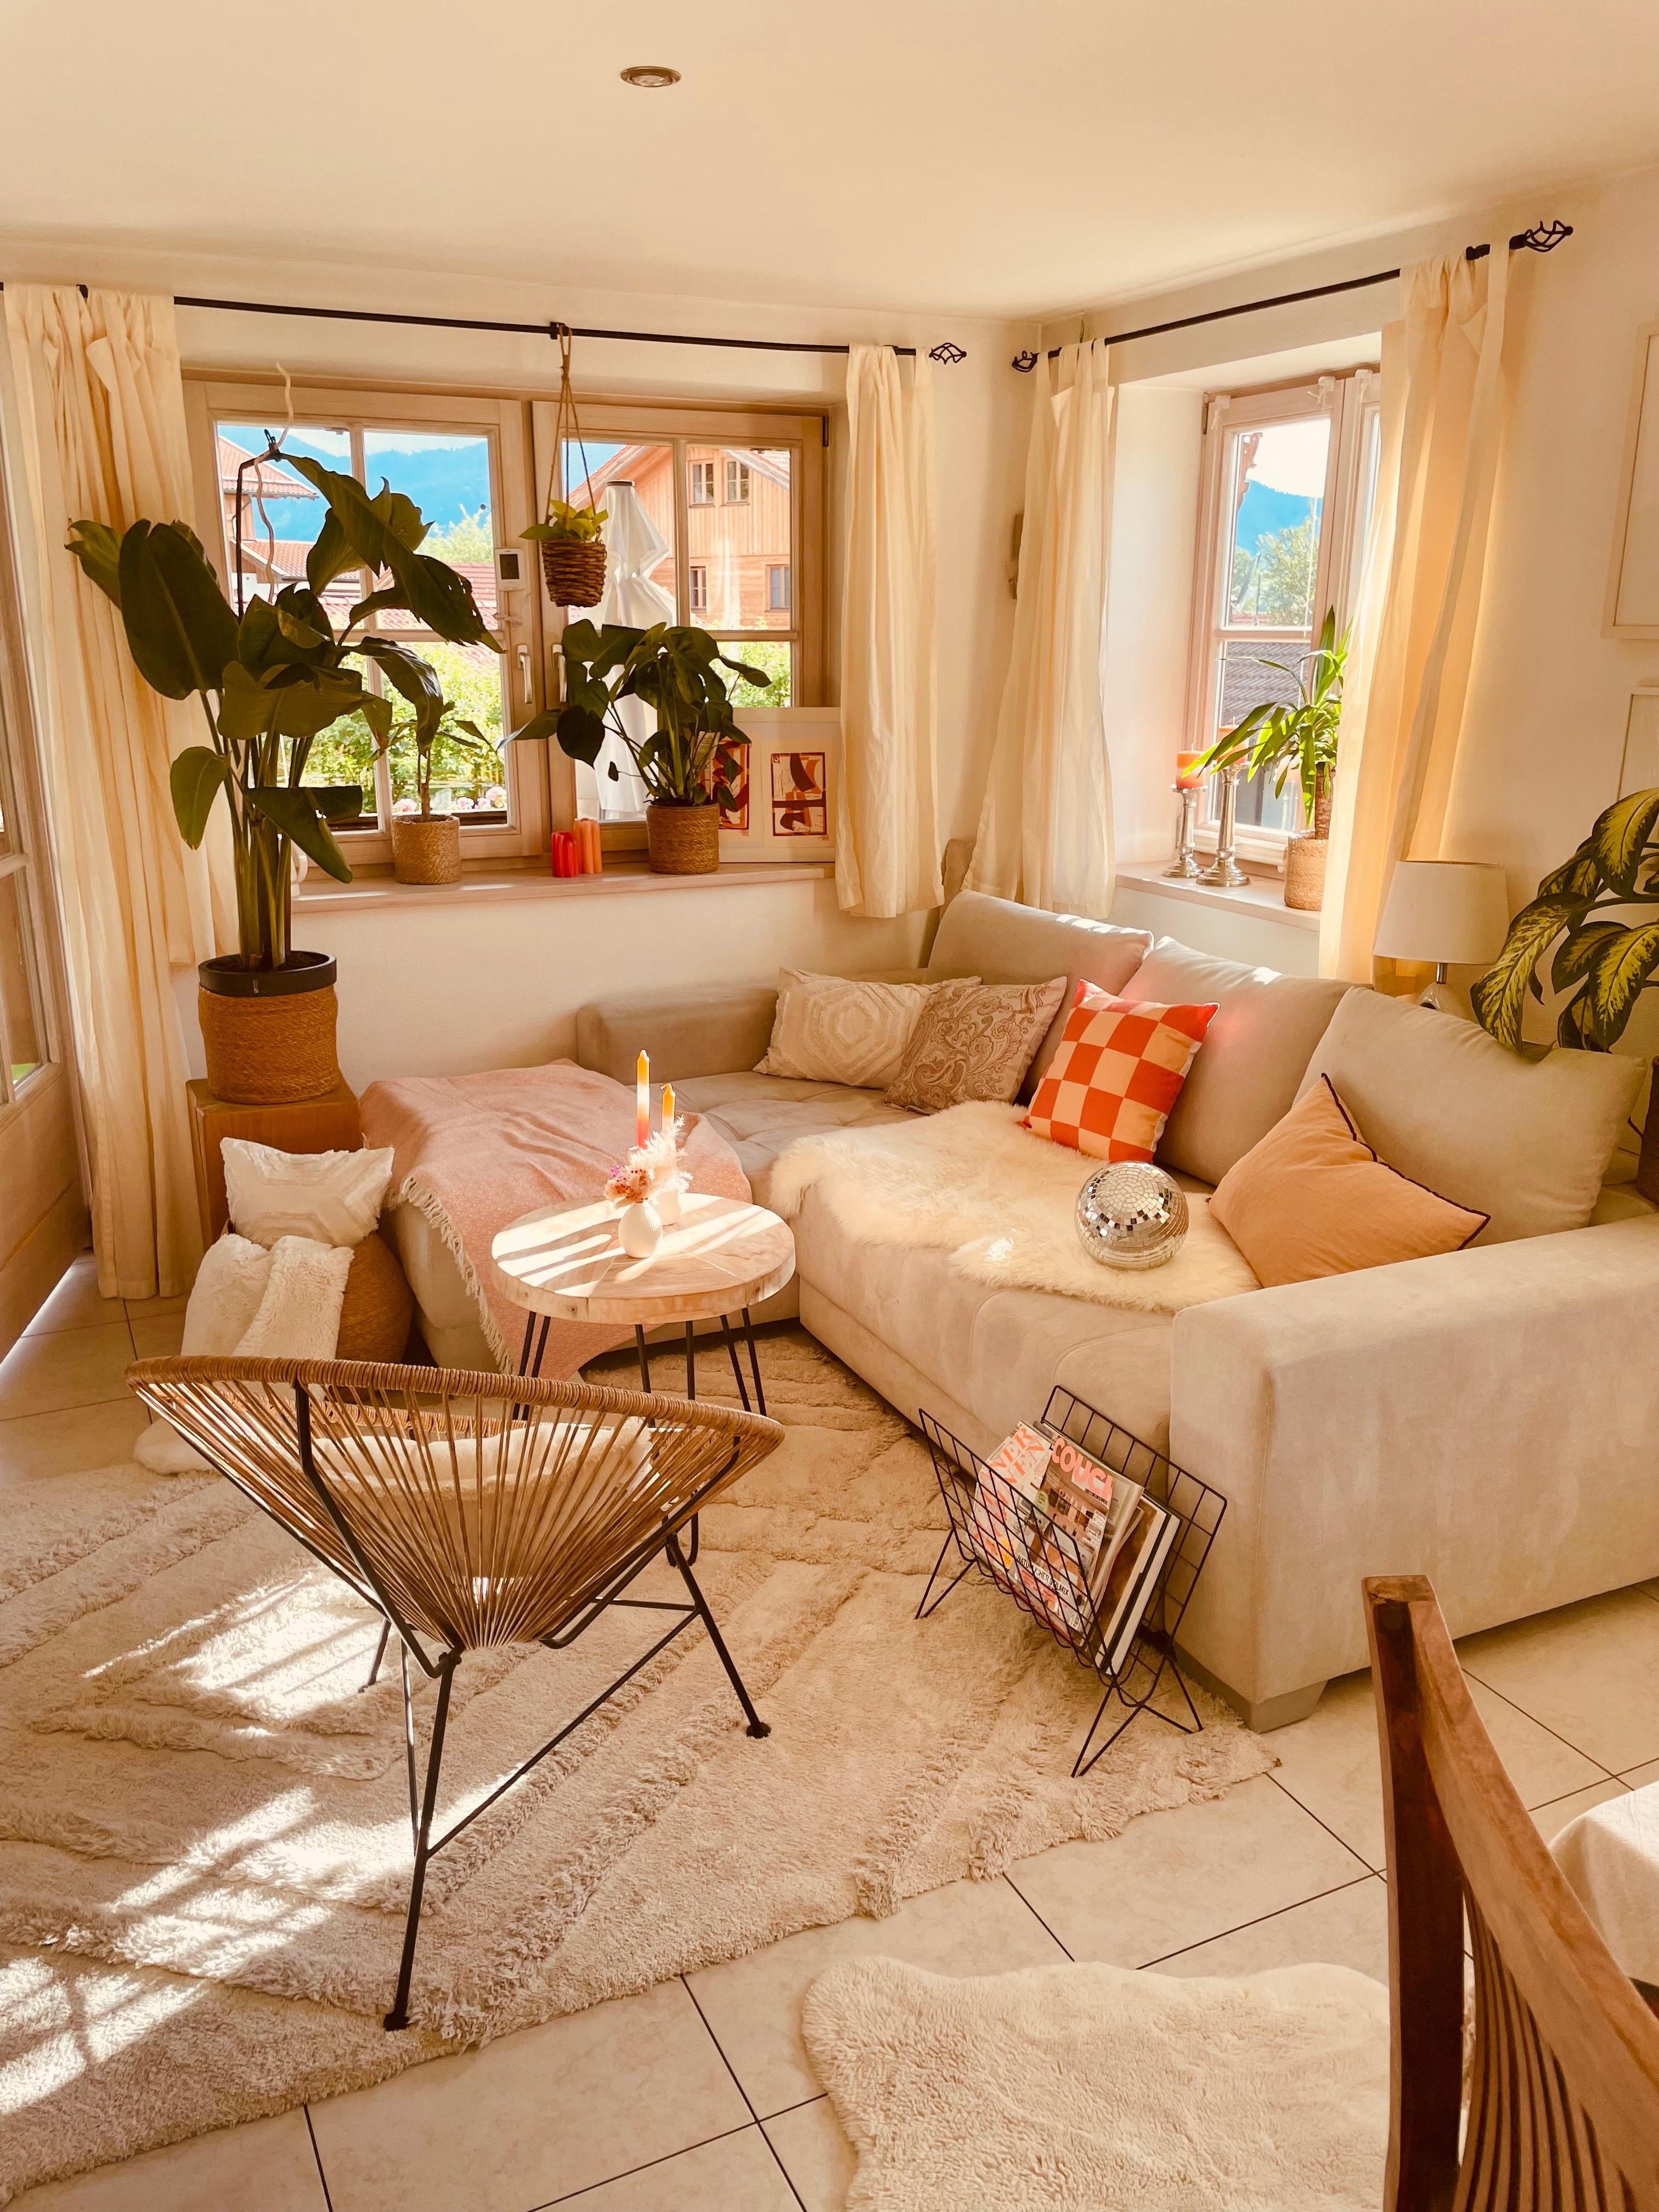 Im #wohnzimmer fühle ich mich mit Pfirsich- und Erdbeertönen am wohlsten. #pastell #couch #farbe #gemütlich #warmefarben 